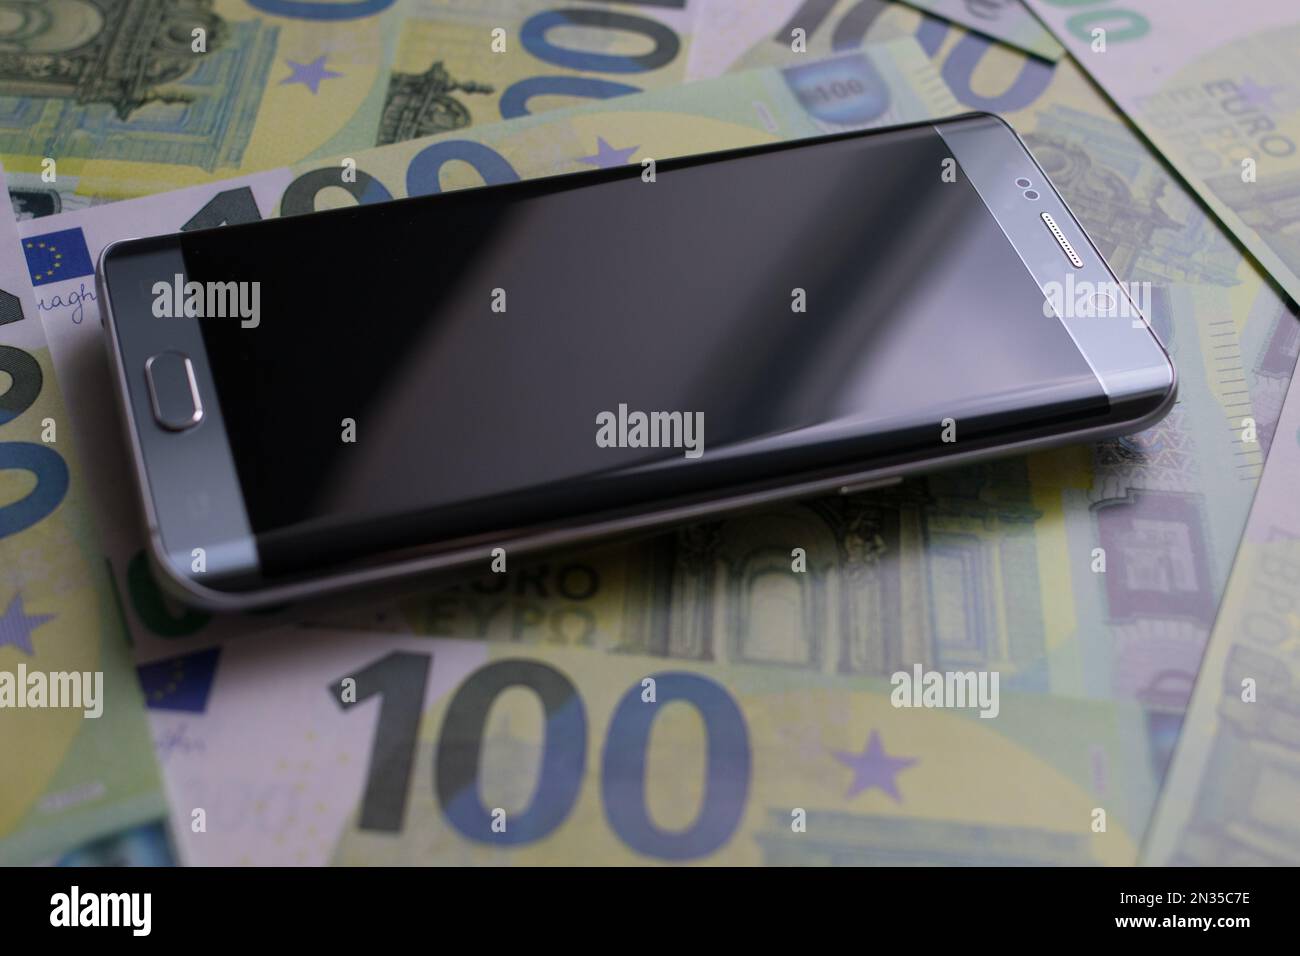 smartphone si trova su 100 banconote in euro Foto Stock